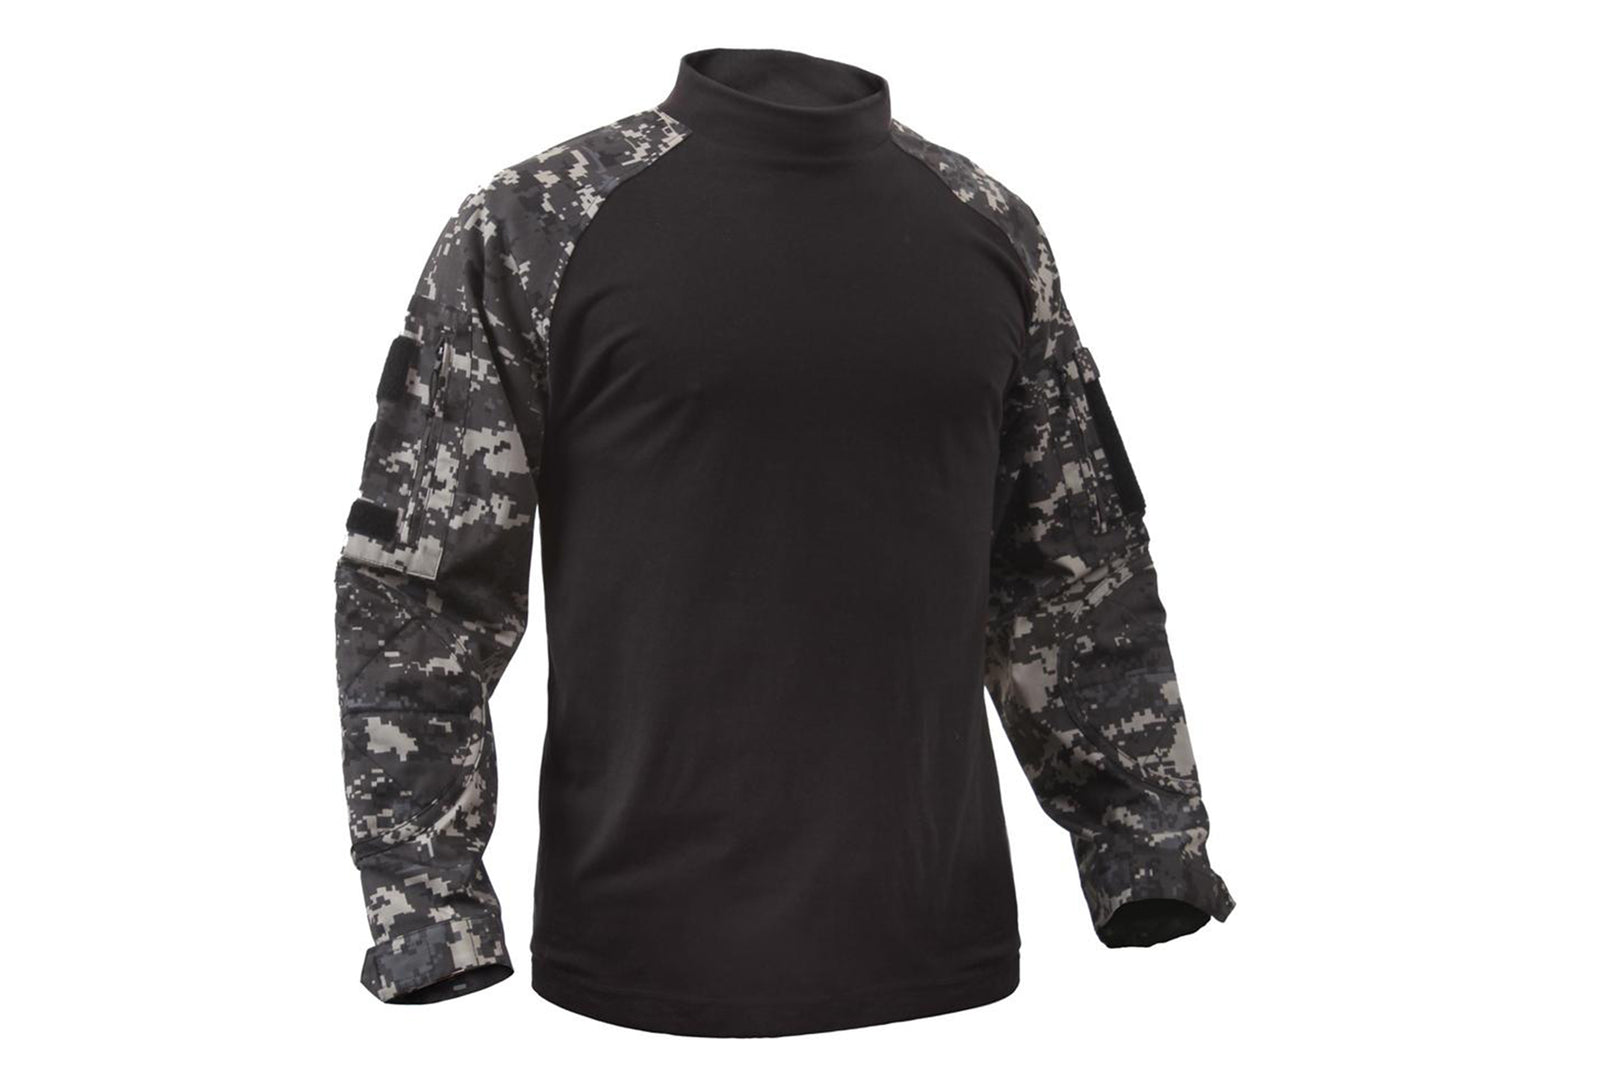 Rothco Military NYCO Combat Shirt